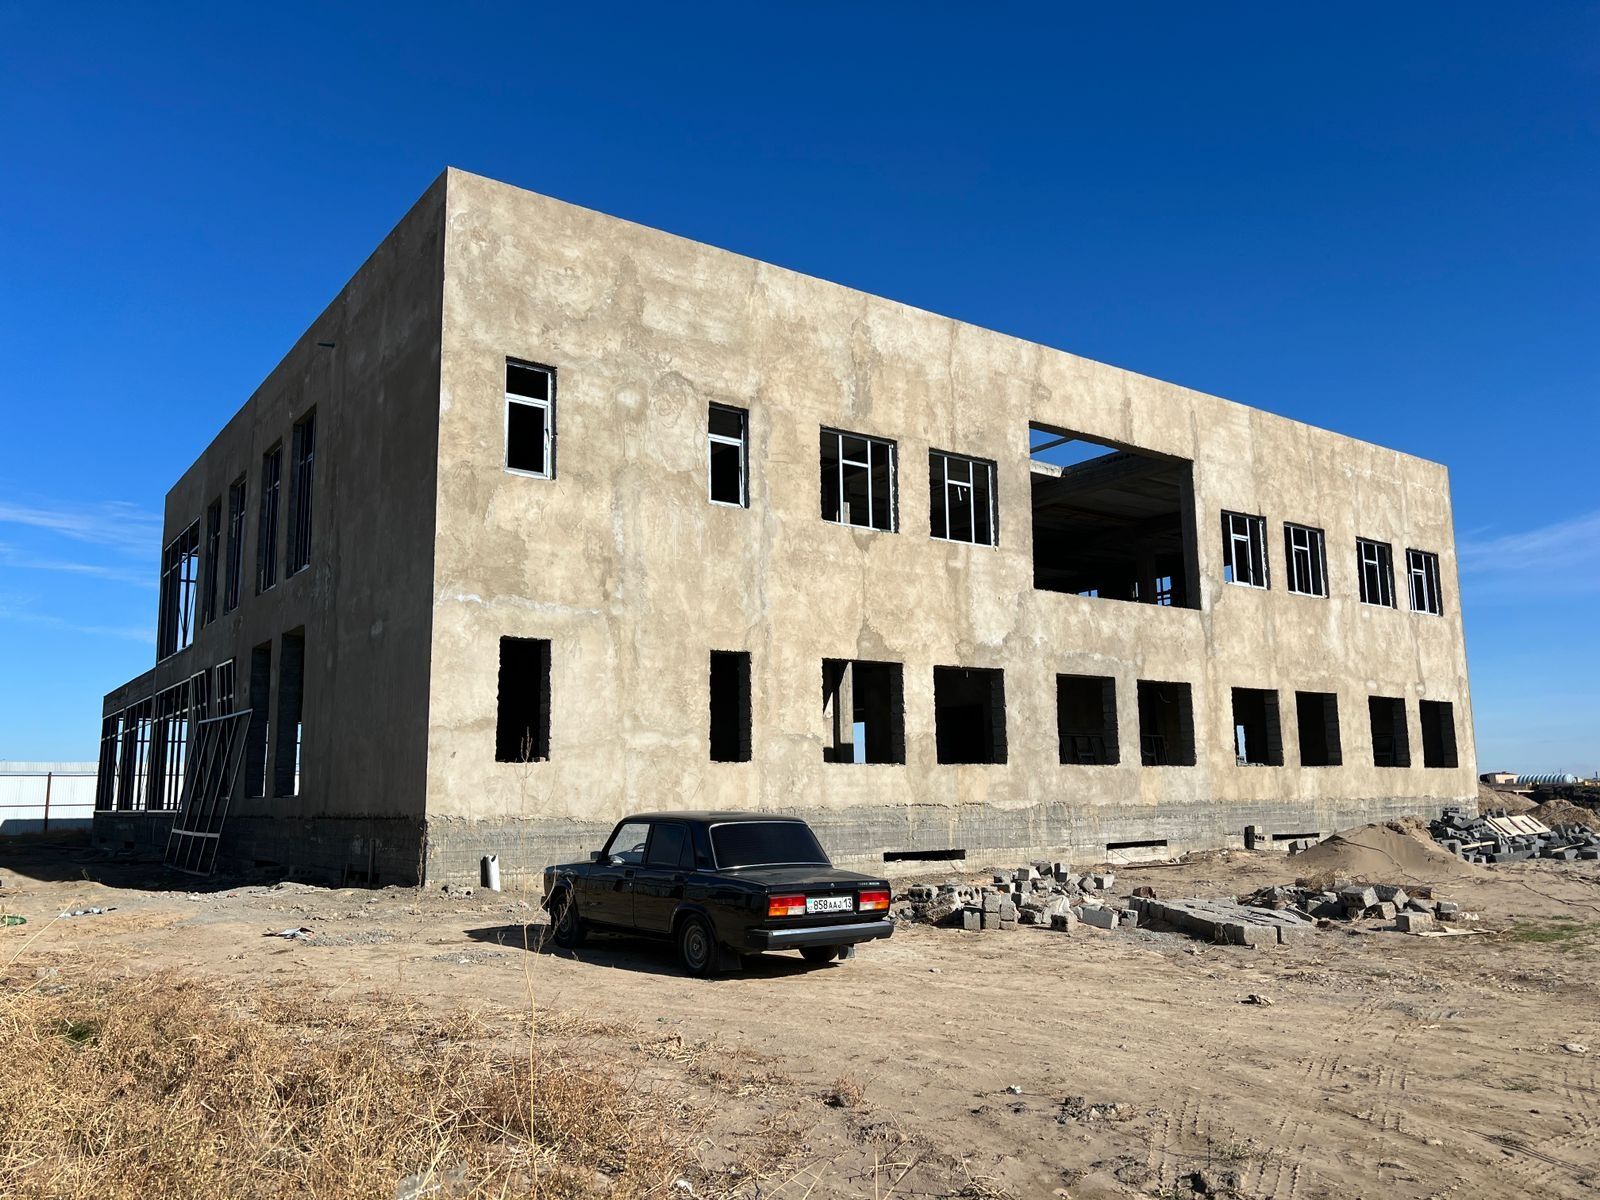 Продаётся здание в районе нового города в Туркестане